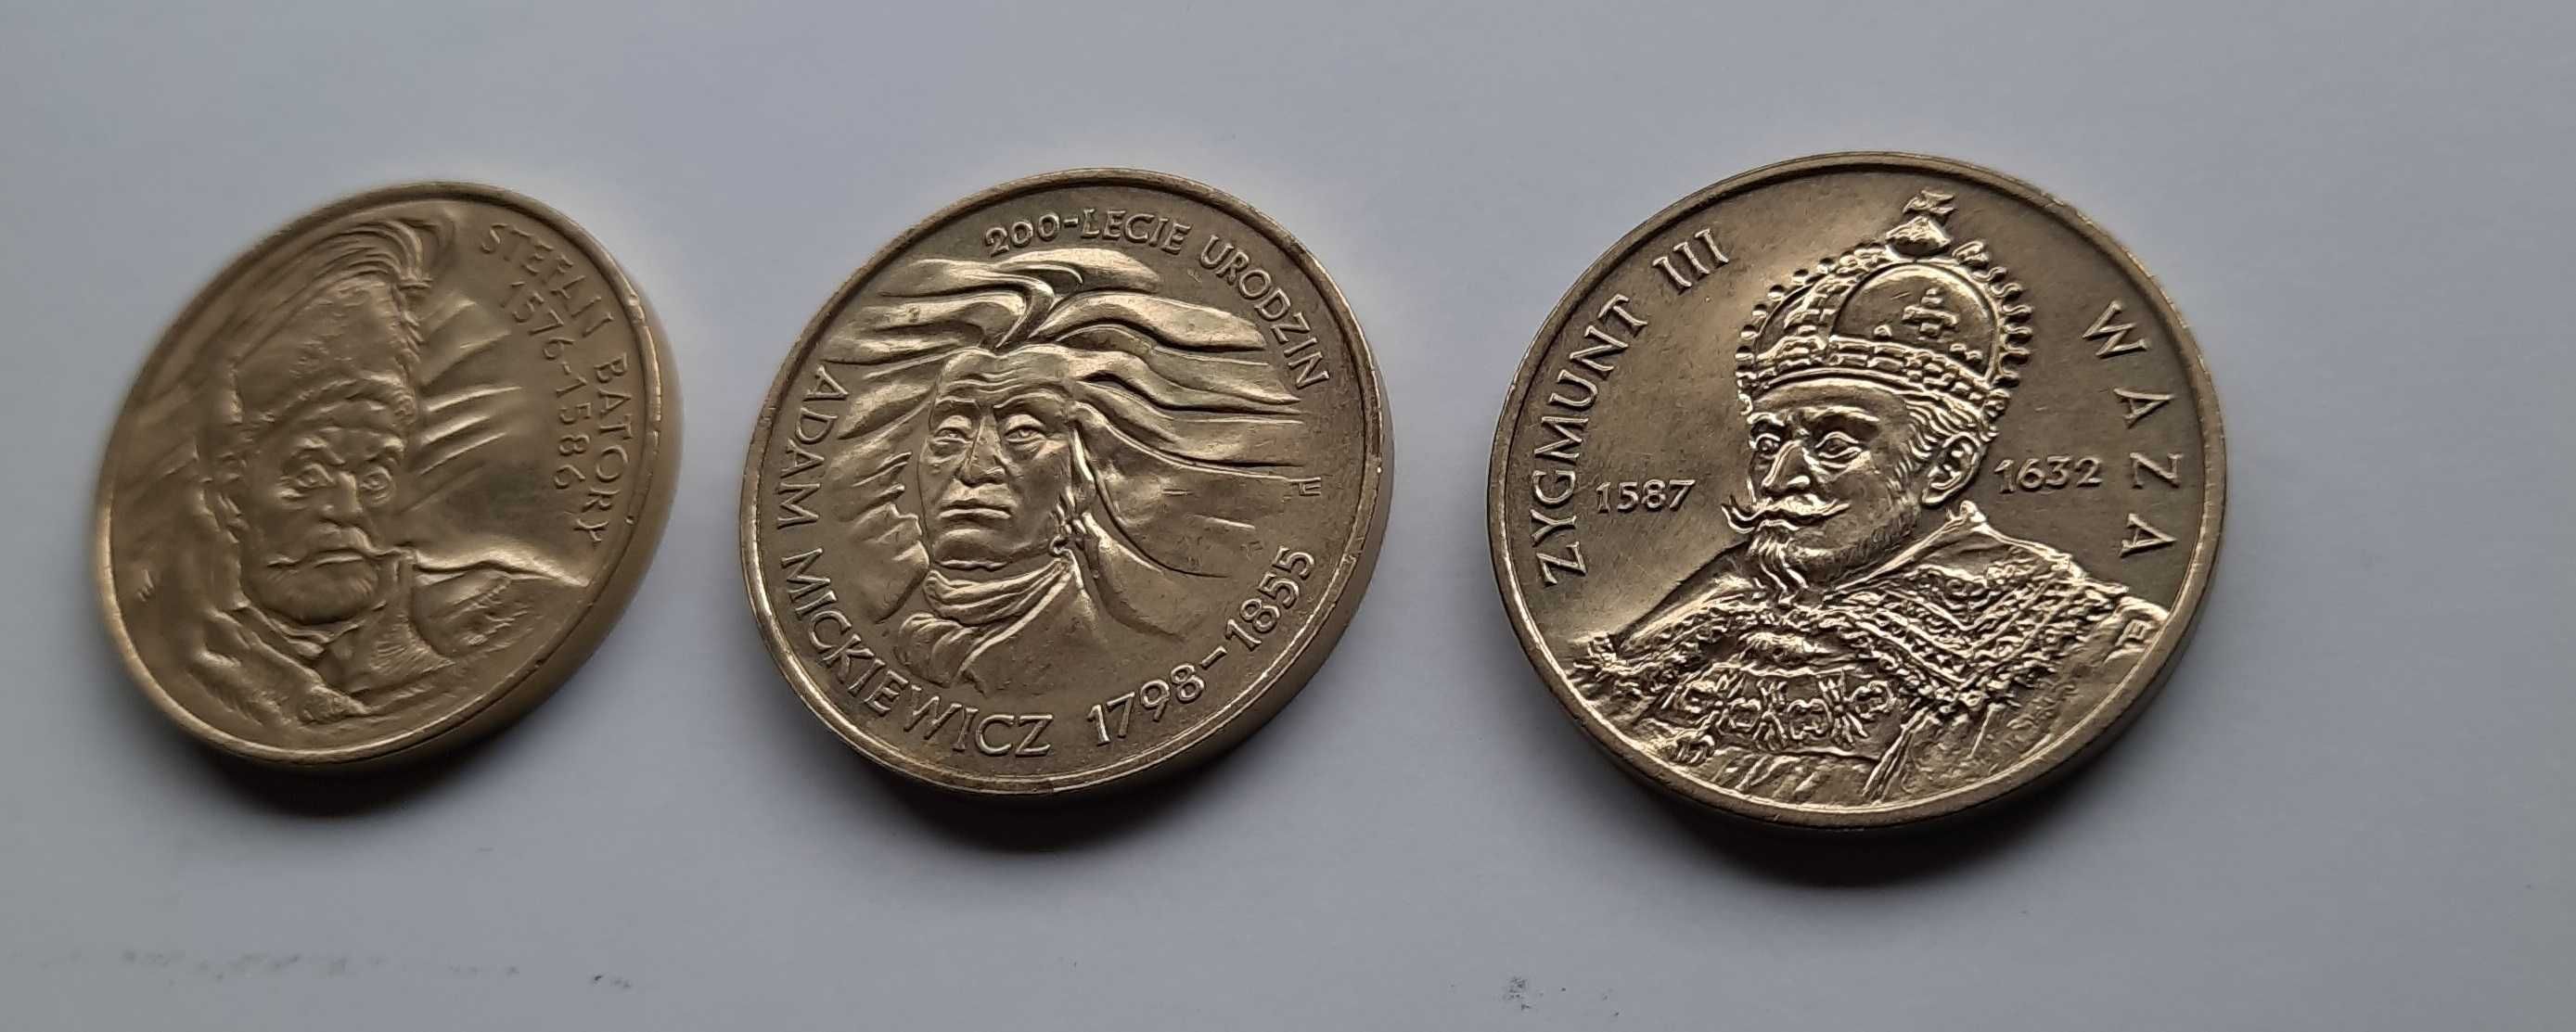 2zł GN 1997 i 1998r. - zestaw 3 monet